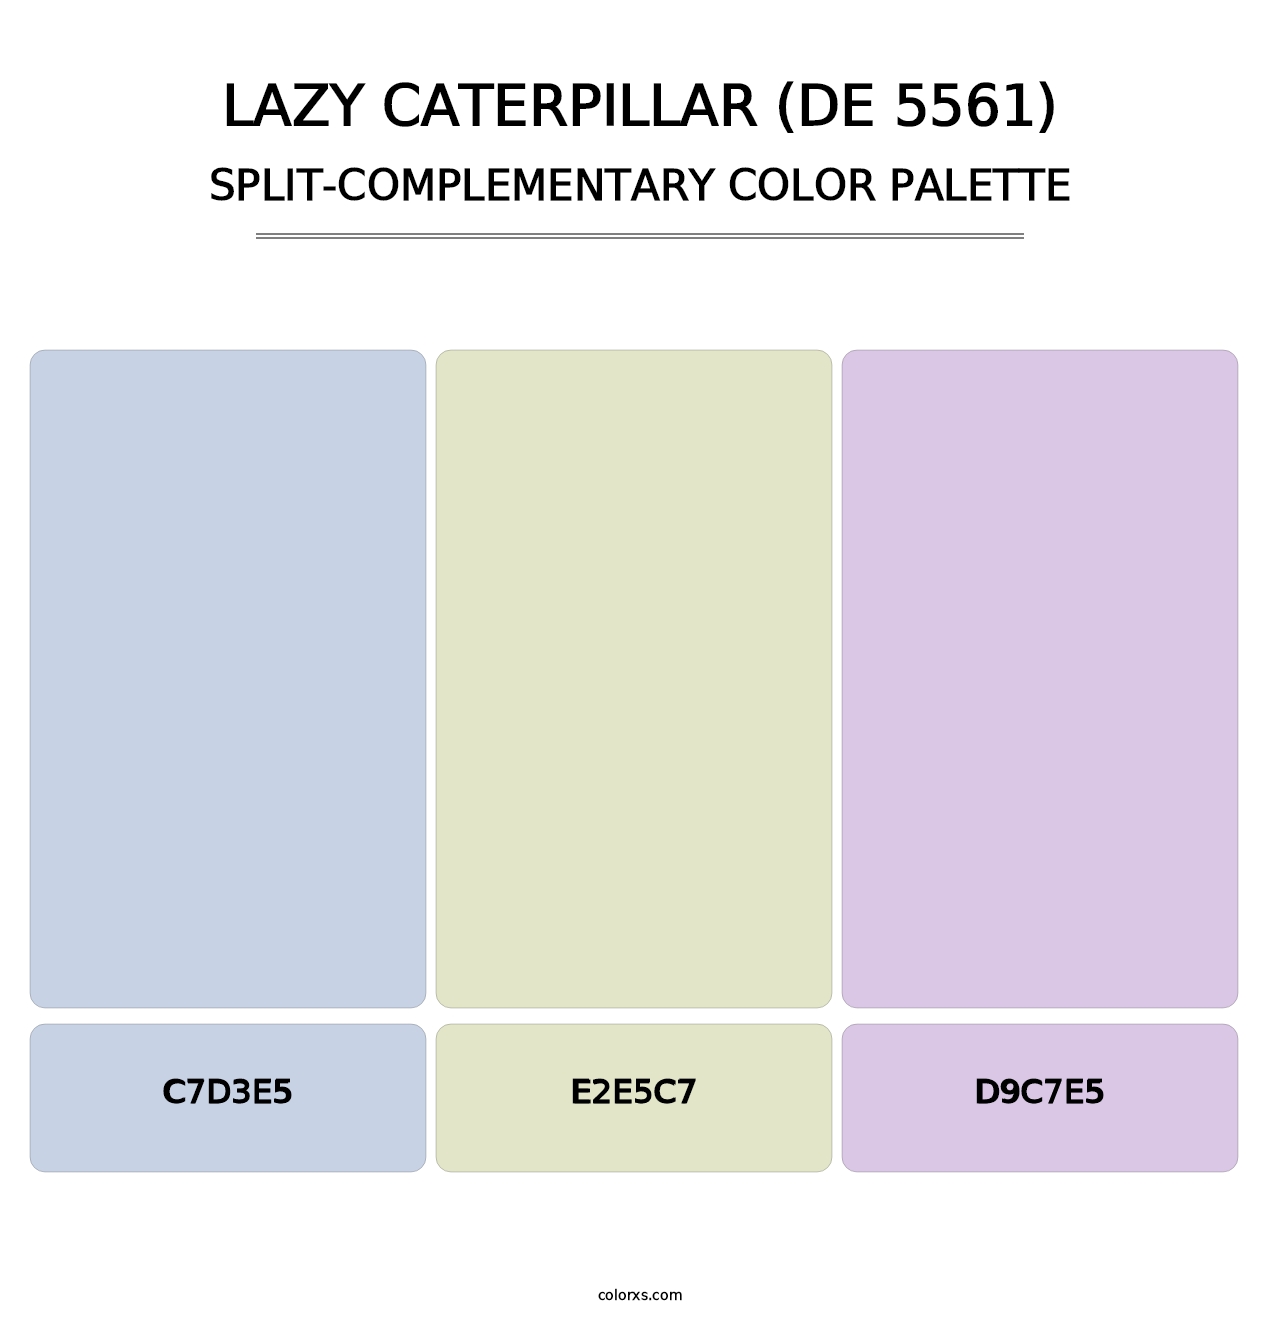 Lazy Caterpillar (DE 5561) - Split-Complementary Color Palette